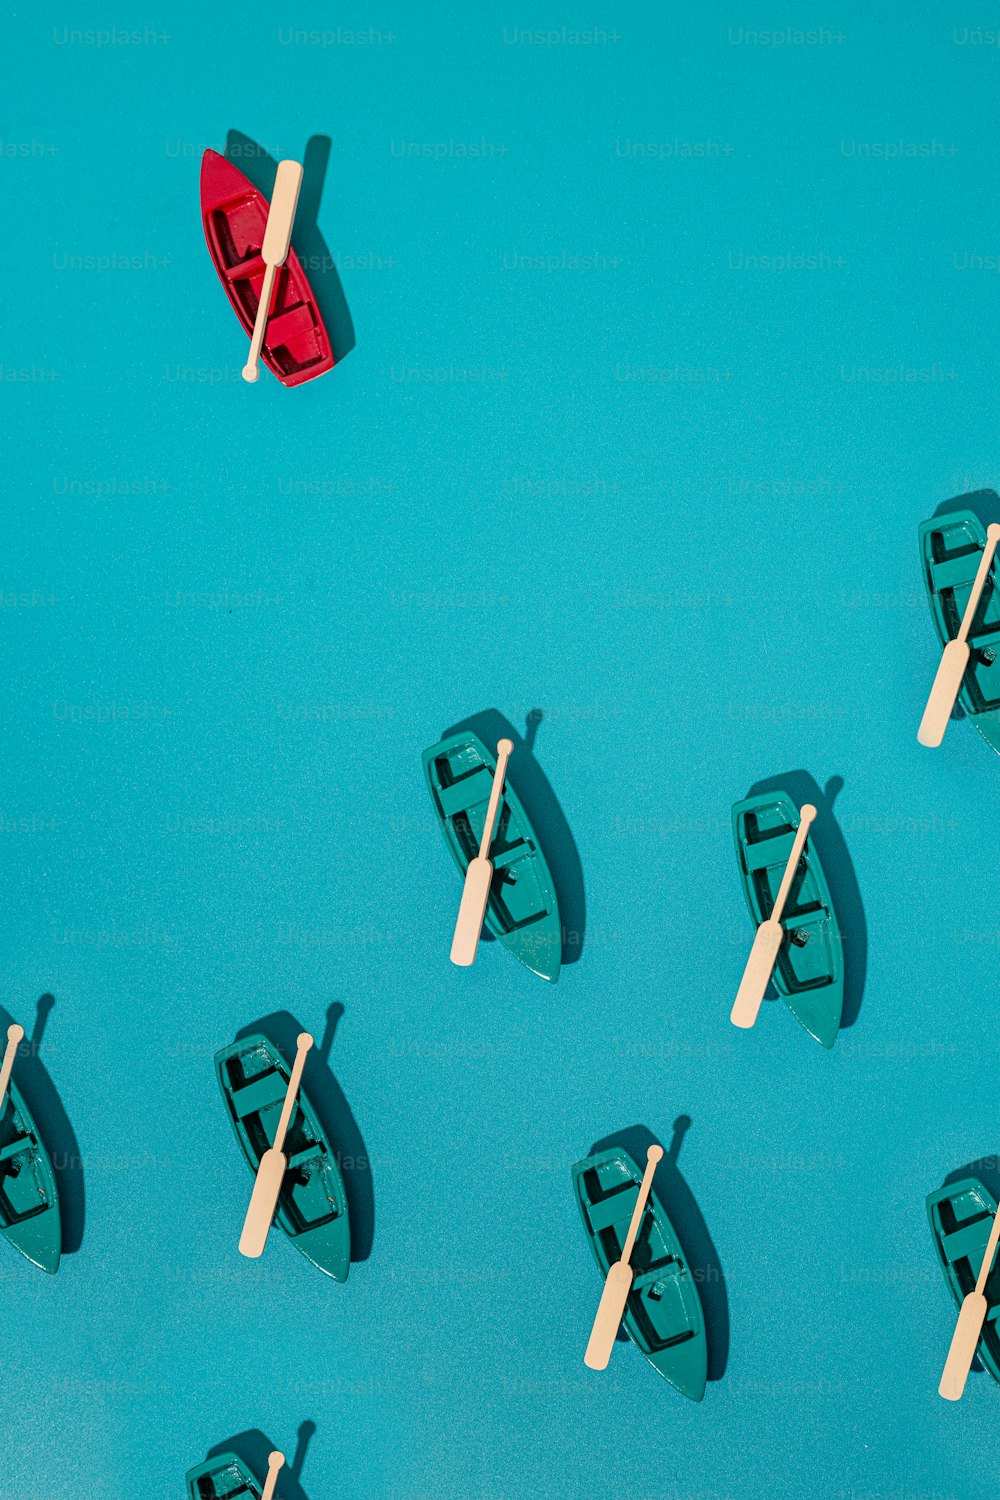 Eine Gruppe kleiner Boote, die auf einer blauen Oberfläche schwimmen